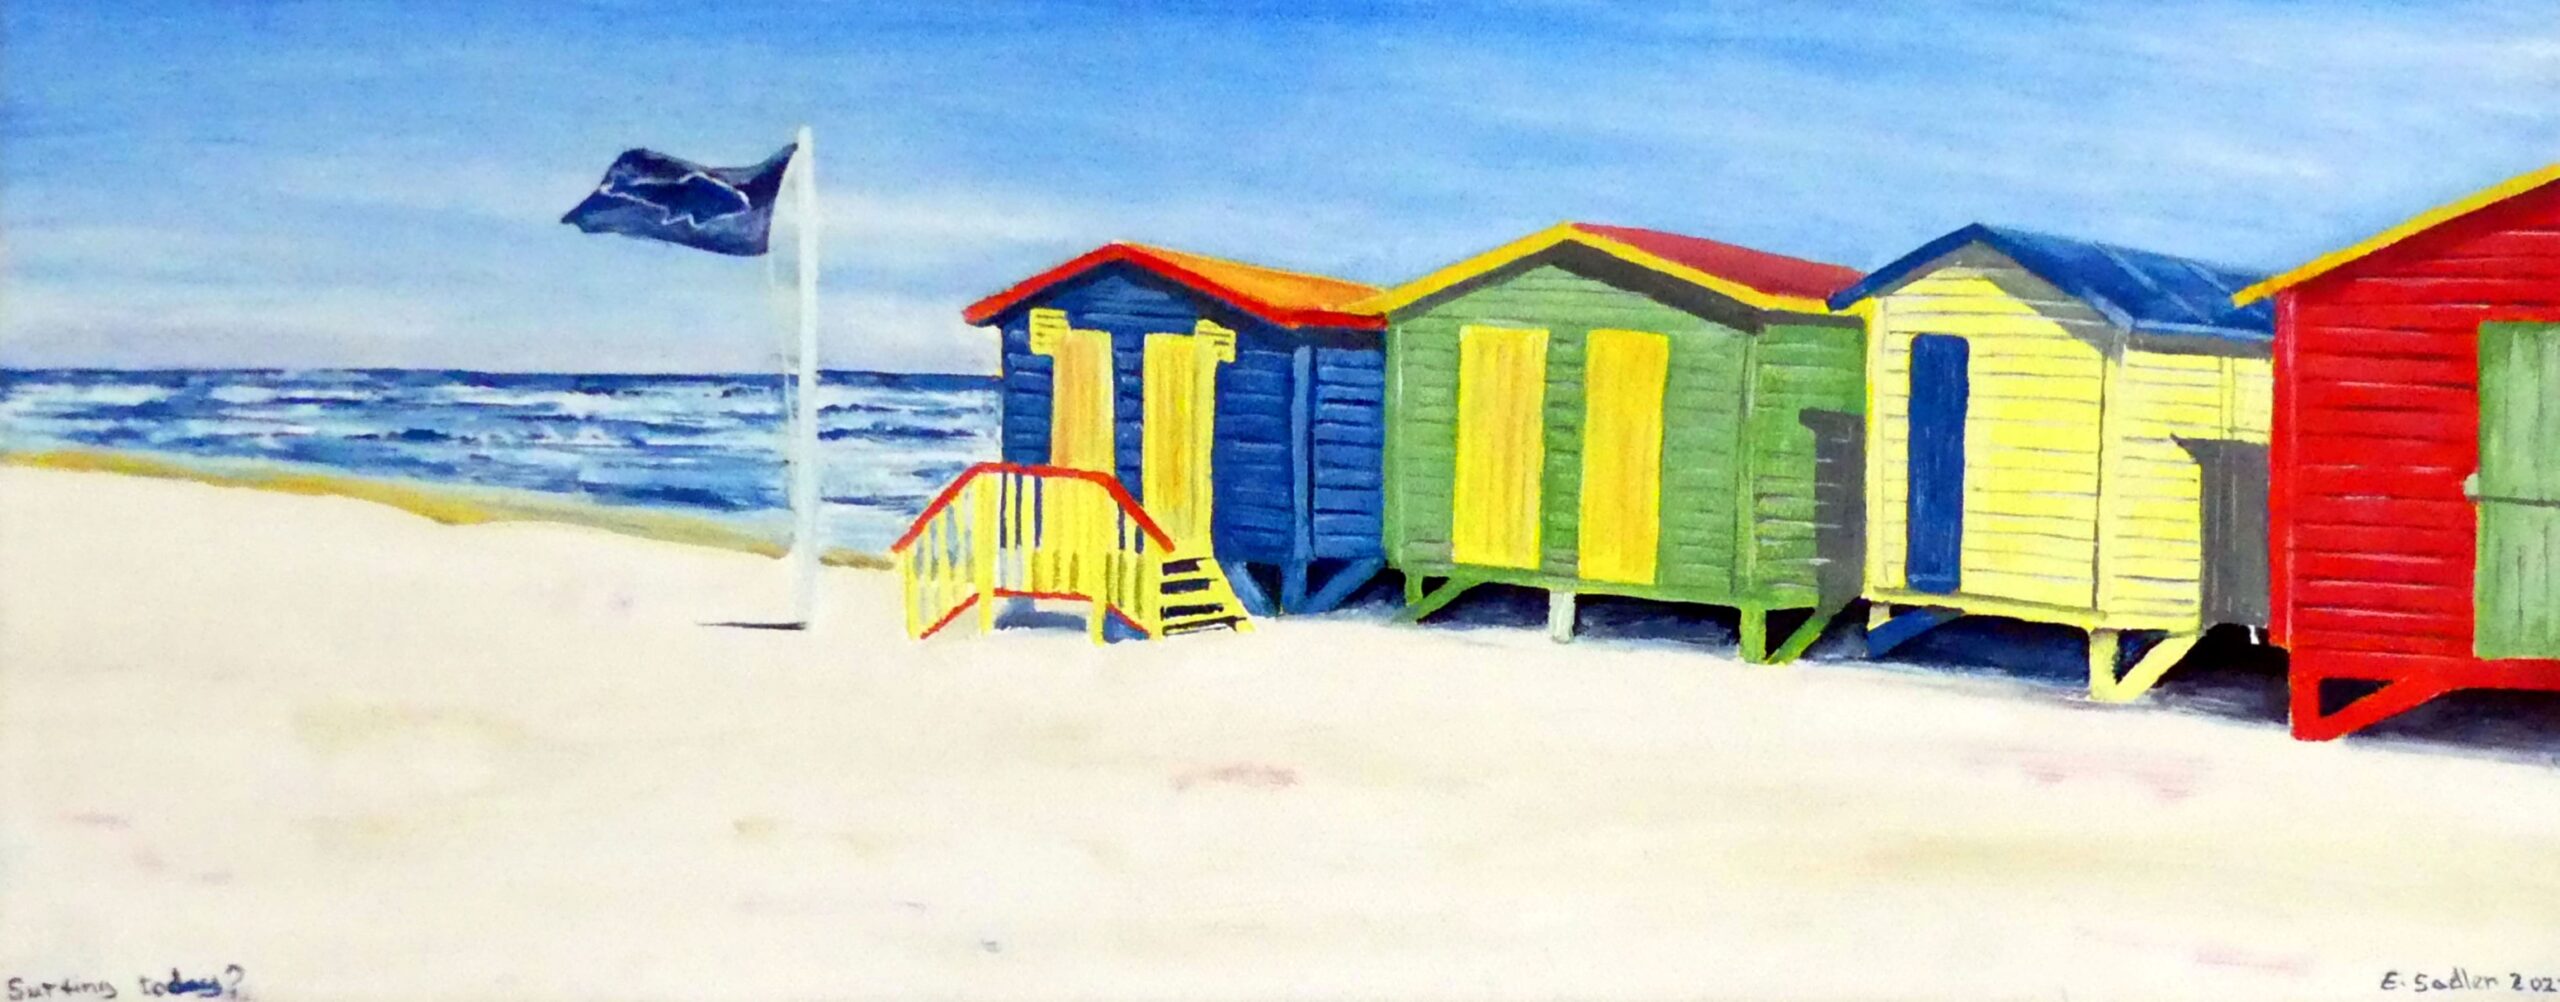 Beach huts oil painting by UK artist Elizabeth Sadler